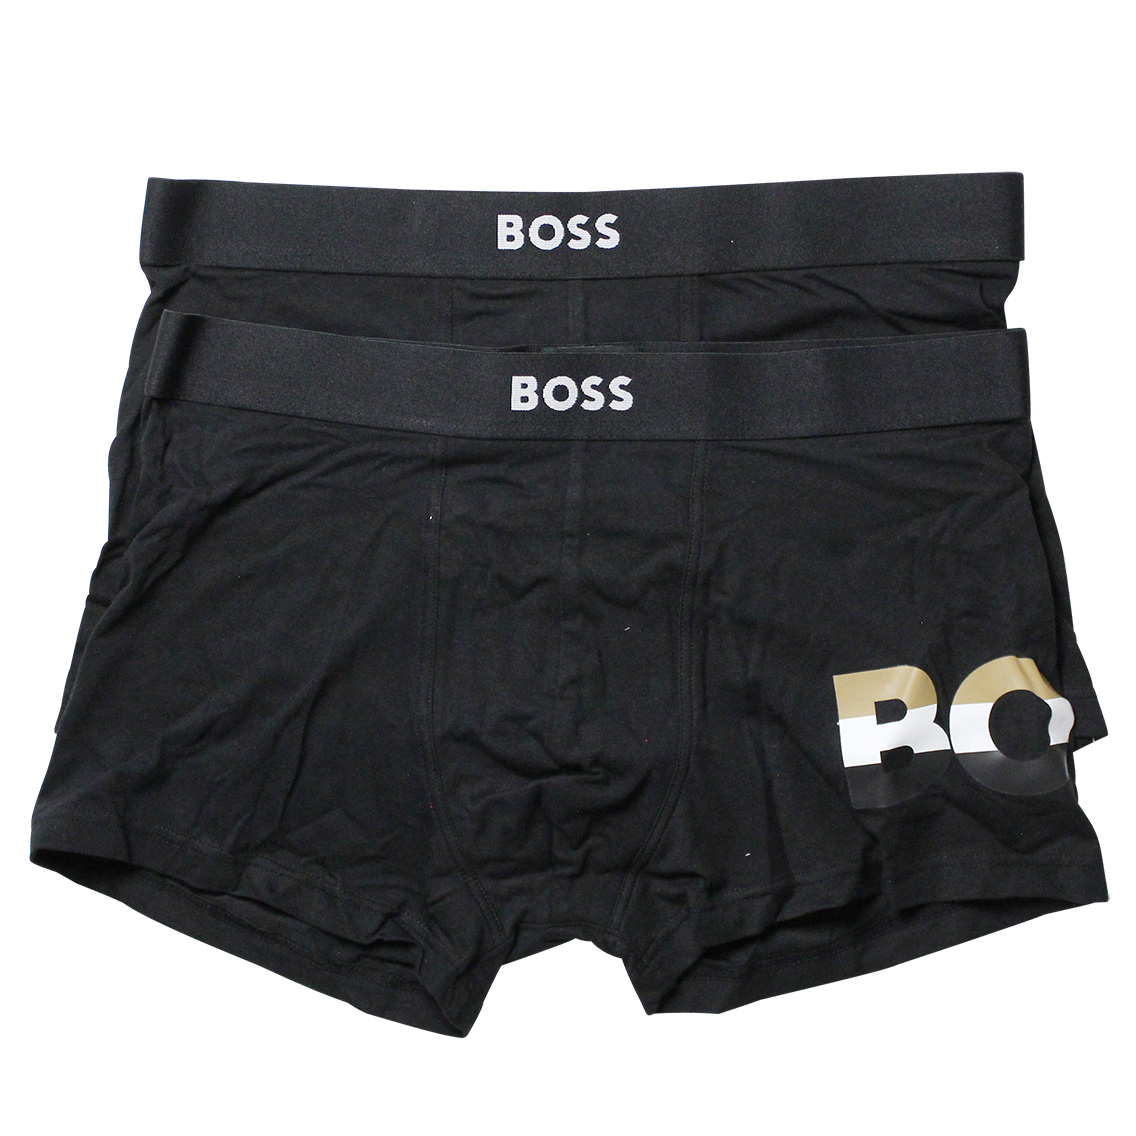 [50491507-001] HUGO BOSS ヒューゴボス ボクサーパンツ メンズ アンダーウェア インナー 男性 下着 ブランド おすすめ 人気 プレゼント